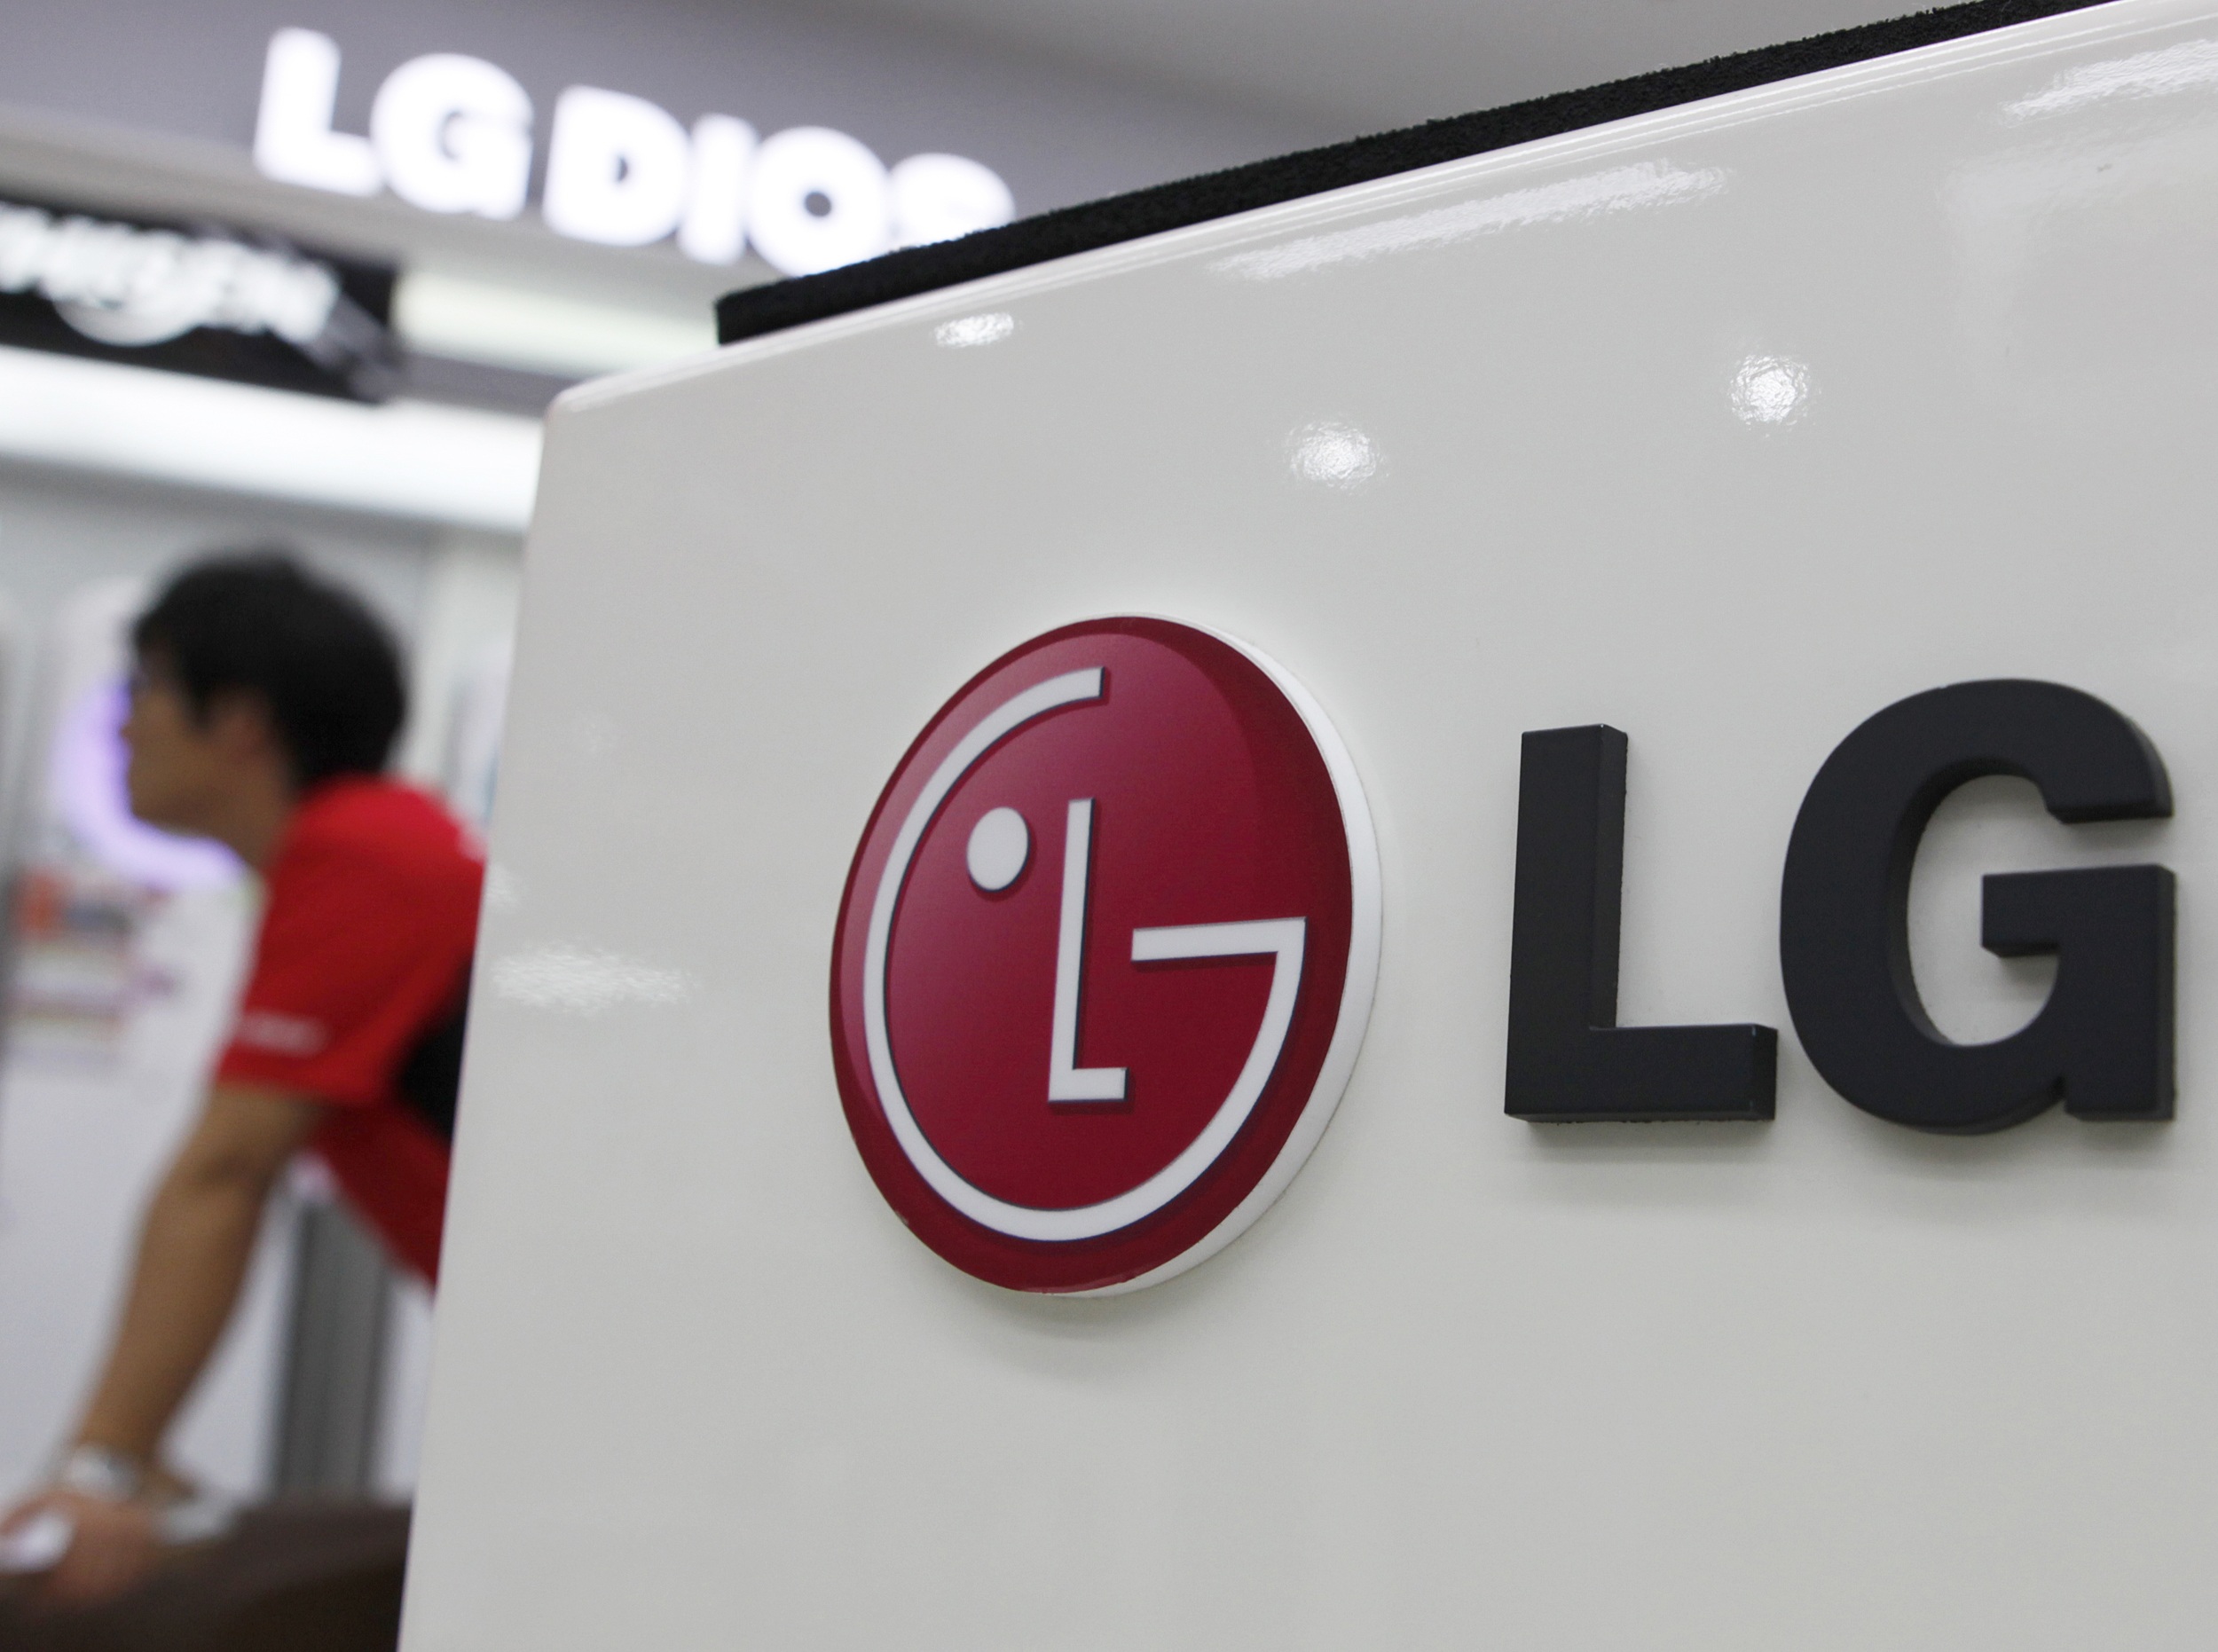 پیشگاموبیل: LG تکنولوژی خودروهای برقی را به ایران خودرو می آورد